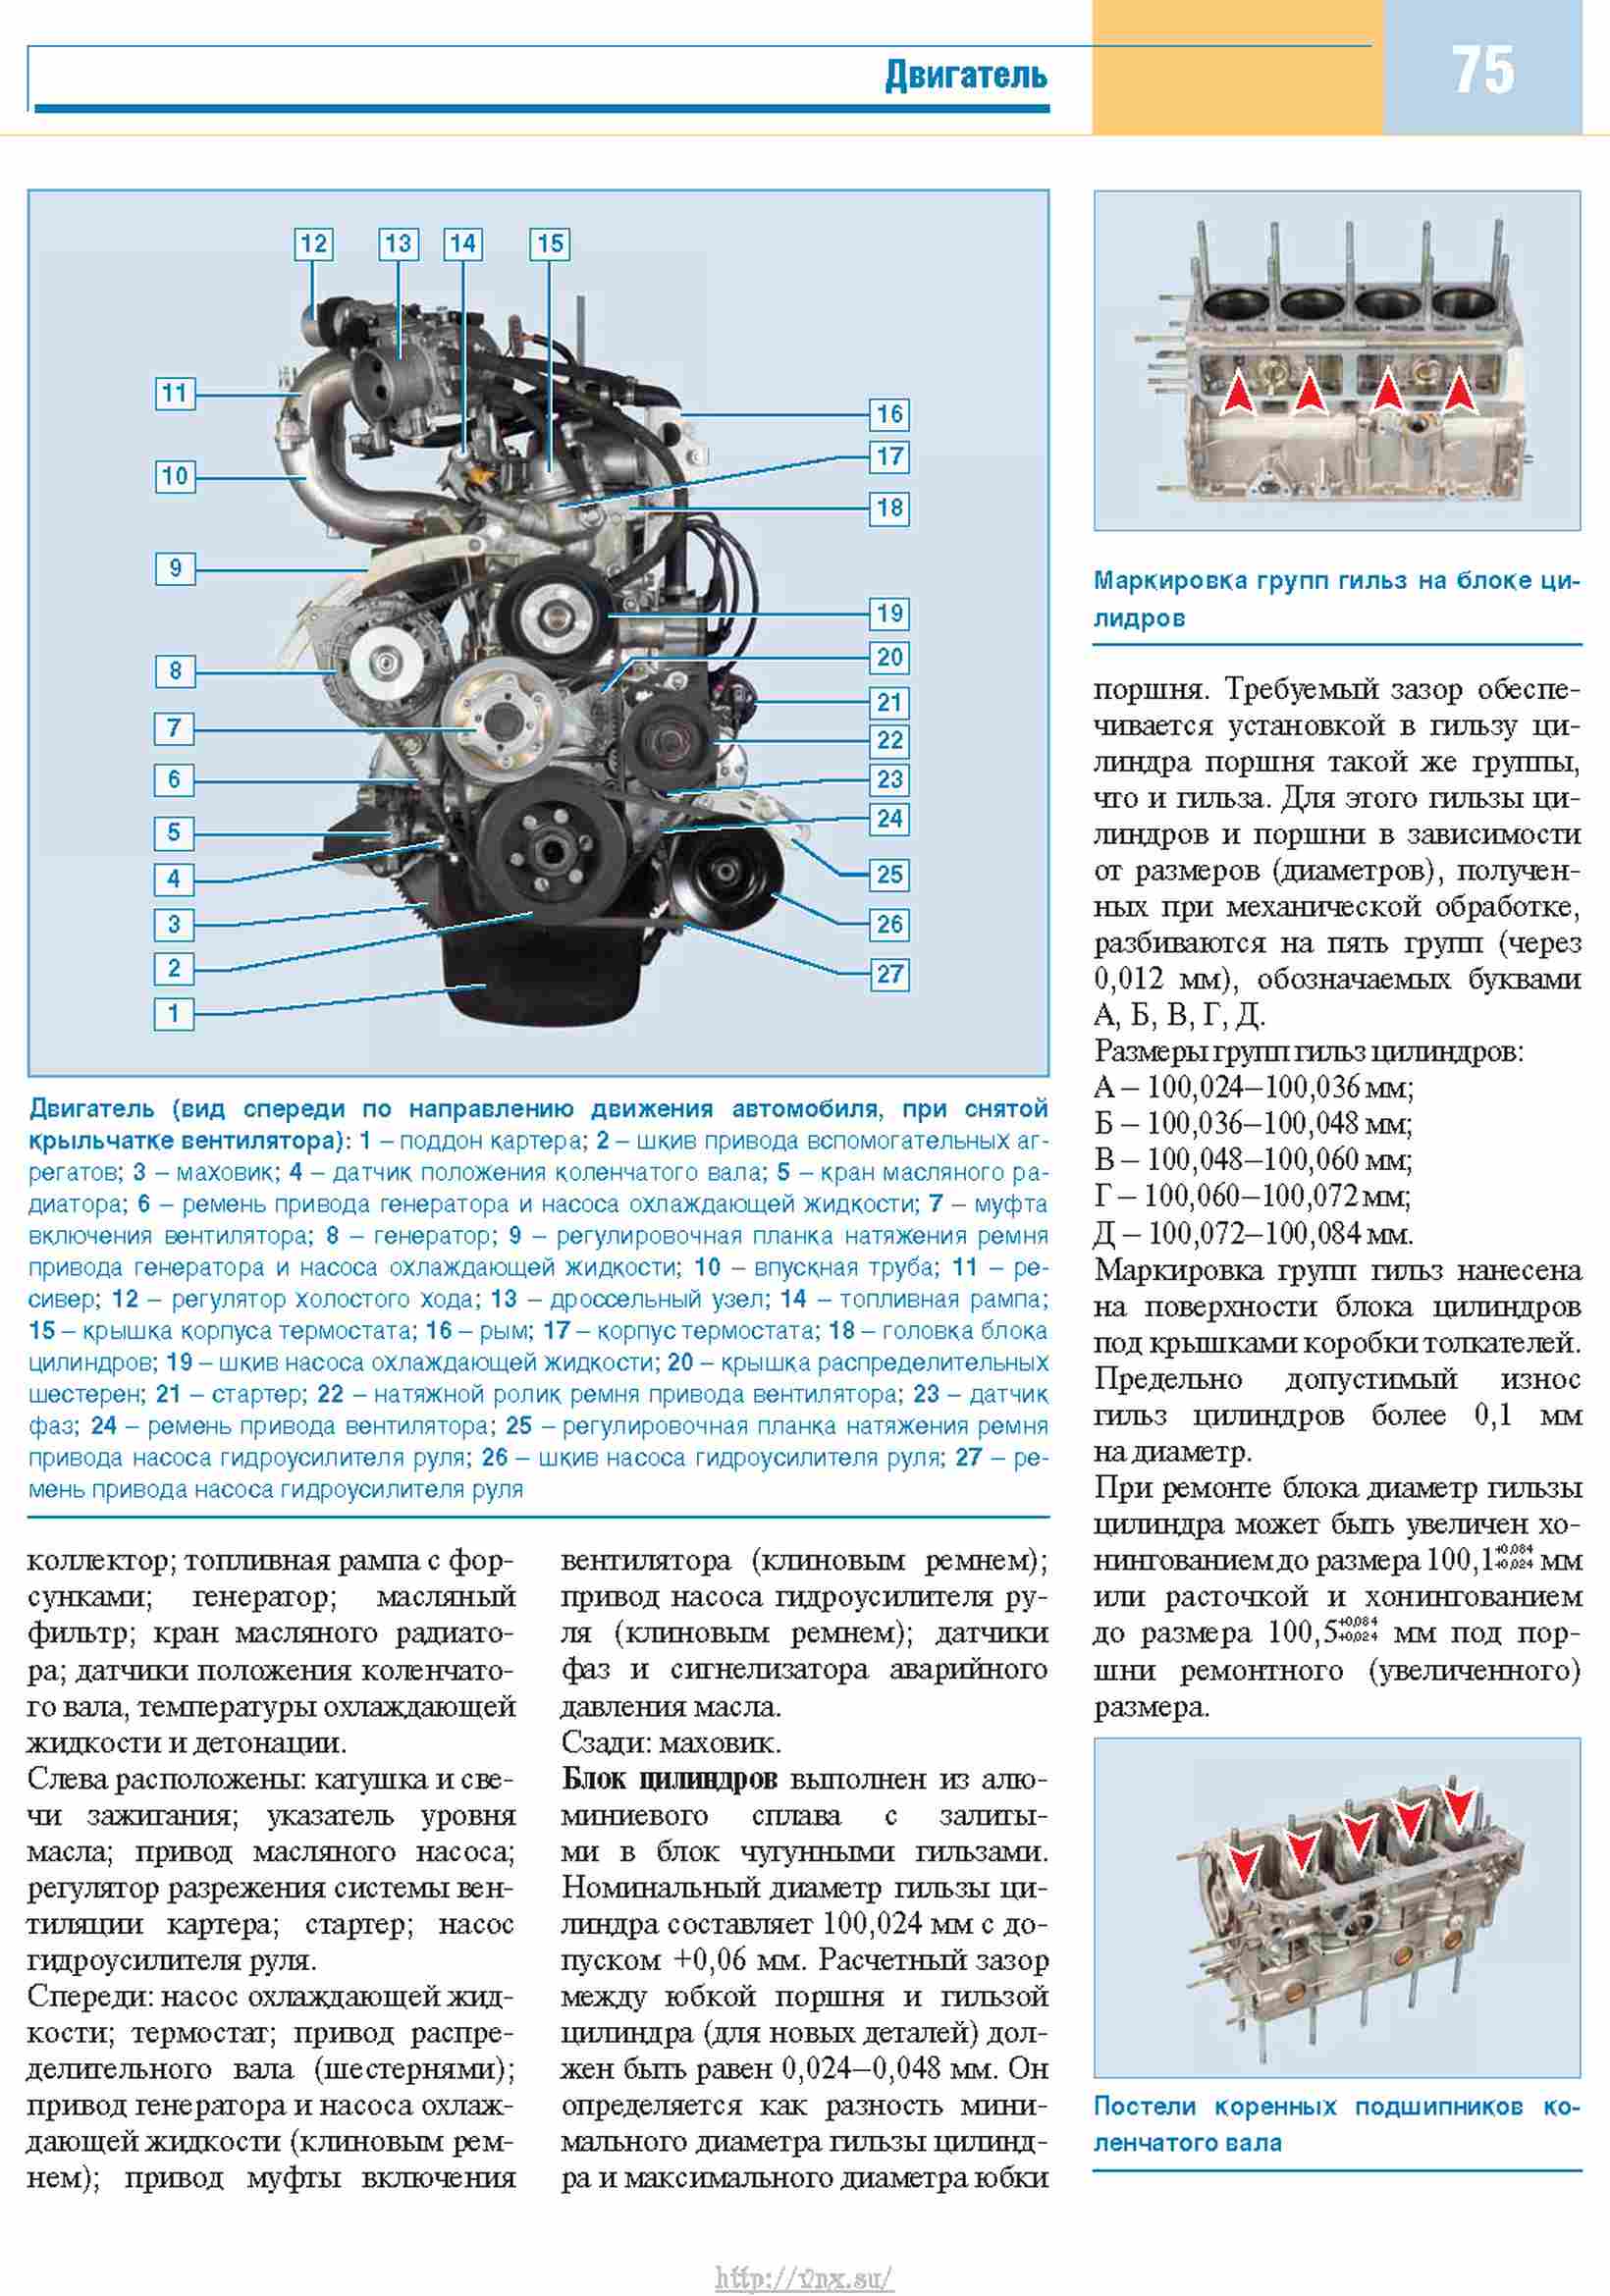 Автомобиль газ-3302: технические характеристики, эксплуатация и используемые двигатели